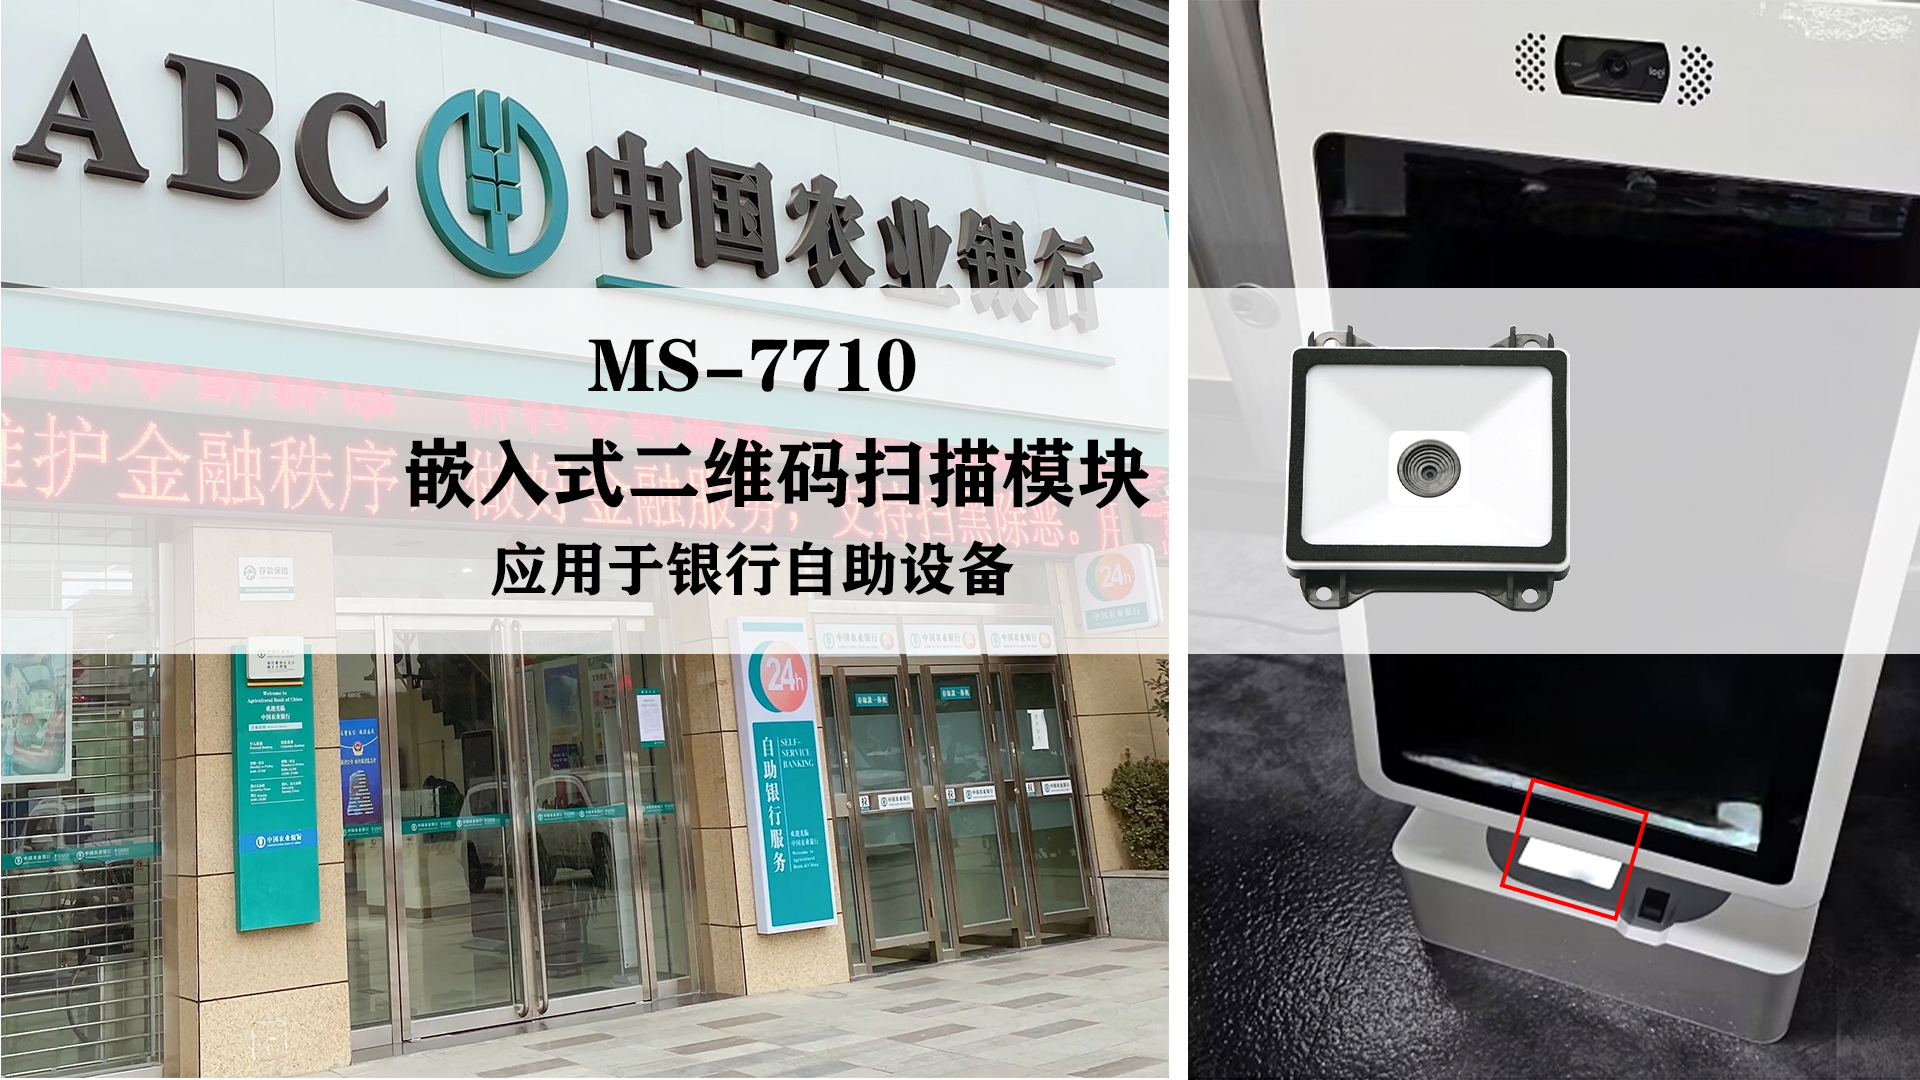 美松嵌入式二维码扫描模块MS-7710应用于银行自助设备